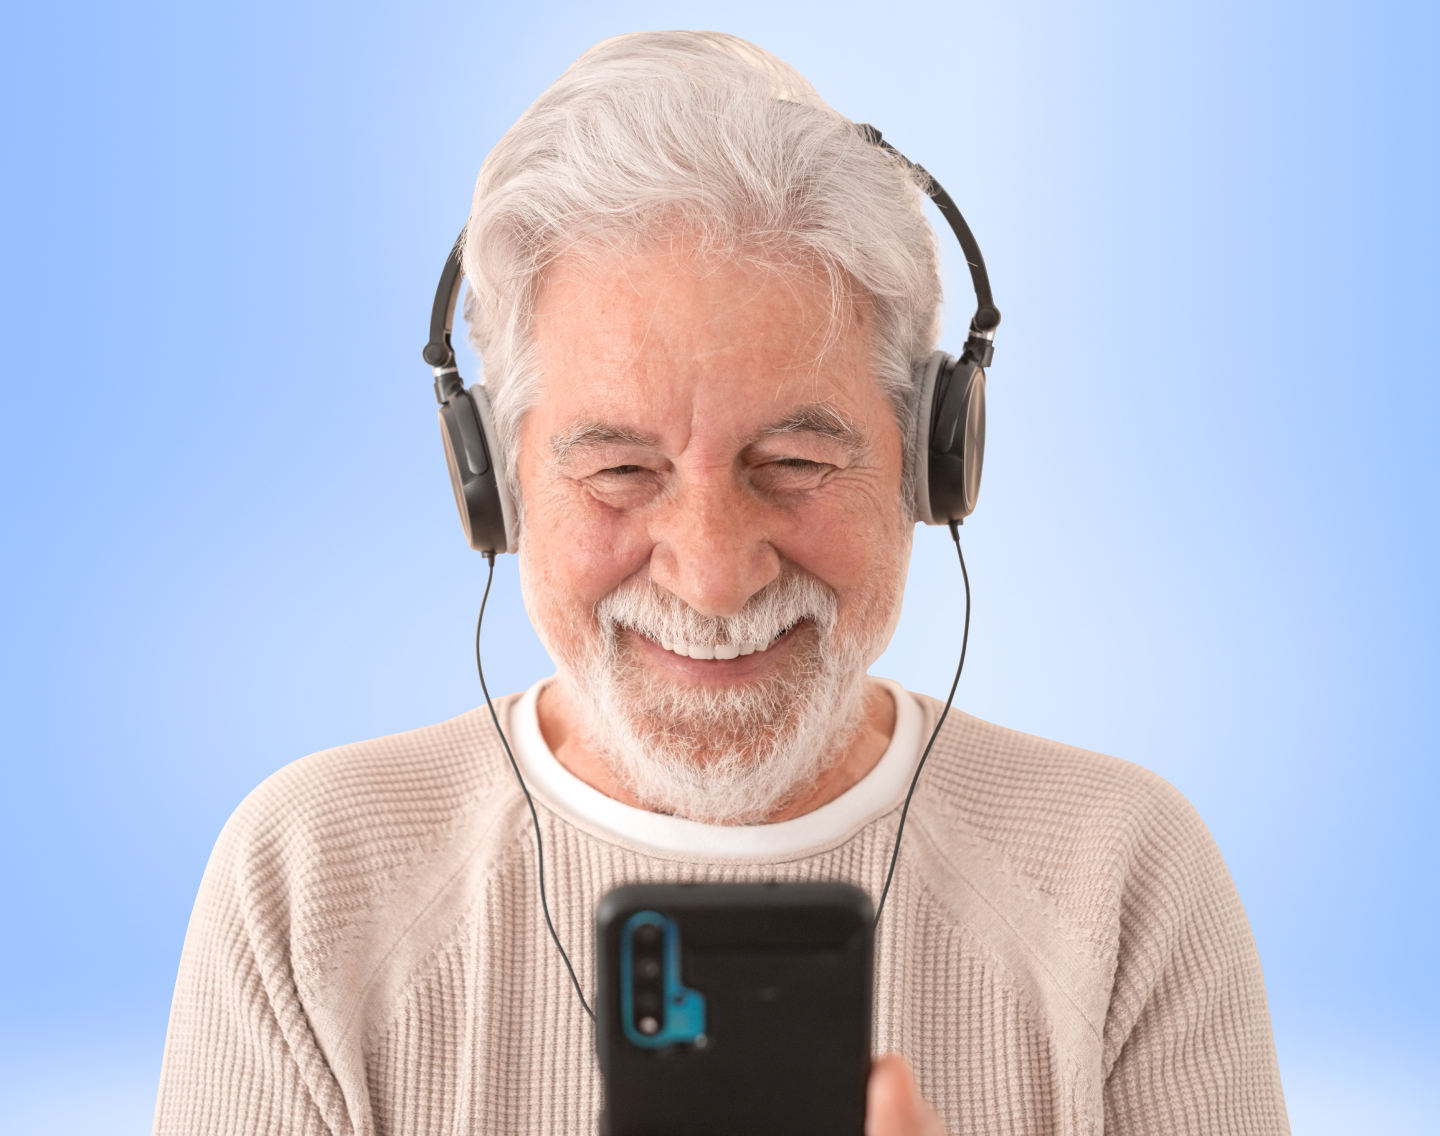 Kostenloser Online-Hörtest mit dem Smartphone/Handy